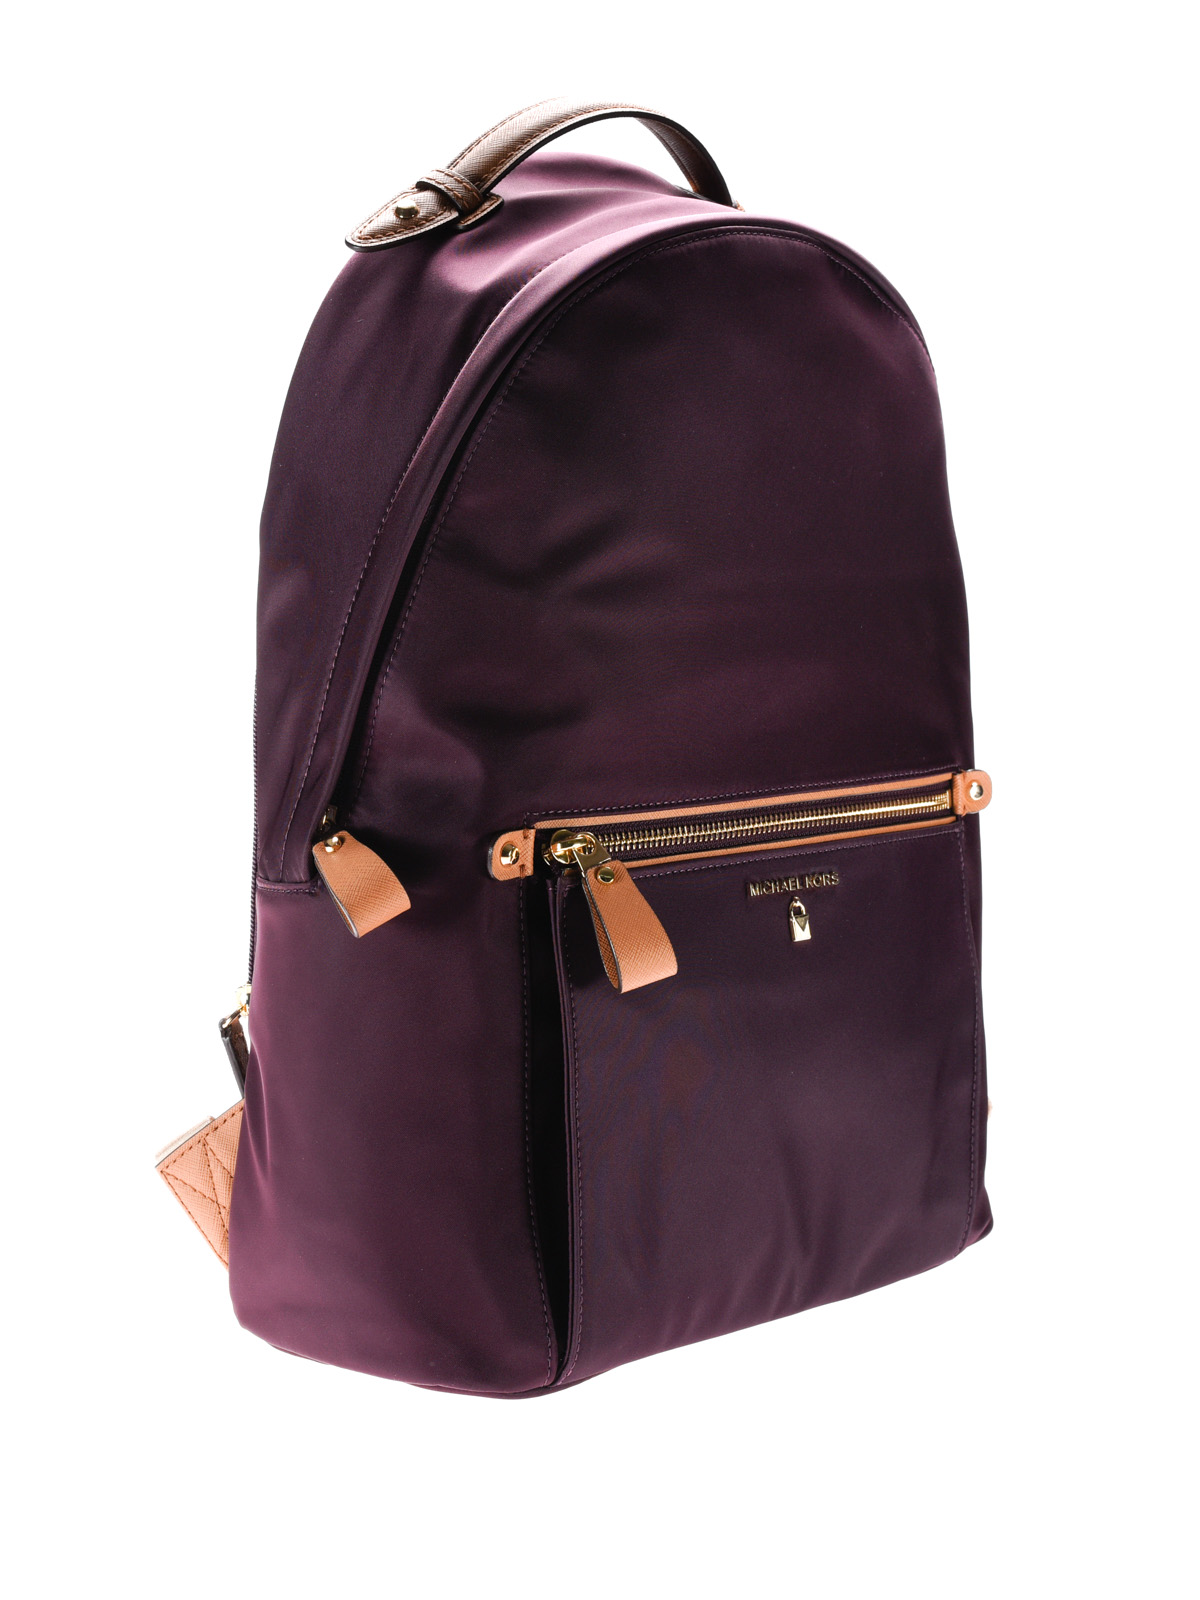 Nogle gange nogle gange hvad som helst Rusten Backpacks Michael Kors - Kelsey nylon backpack - 30F7GO2B7C599